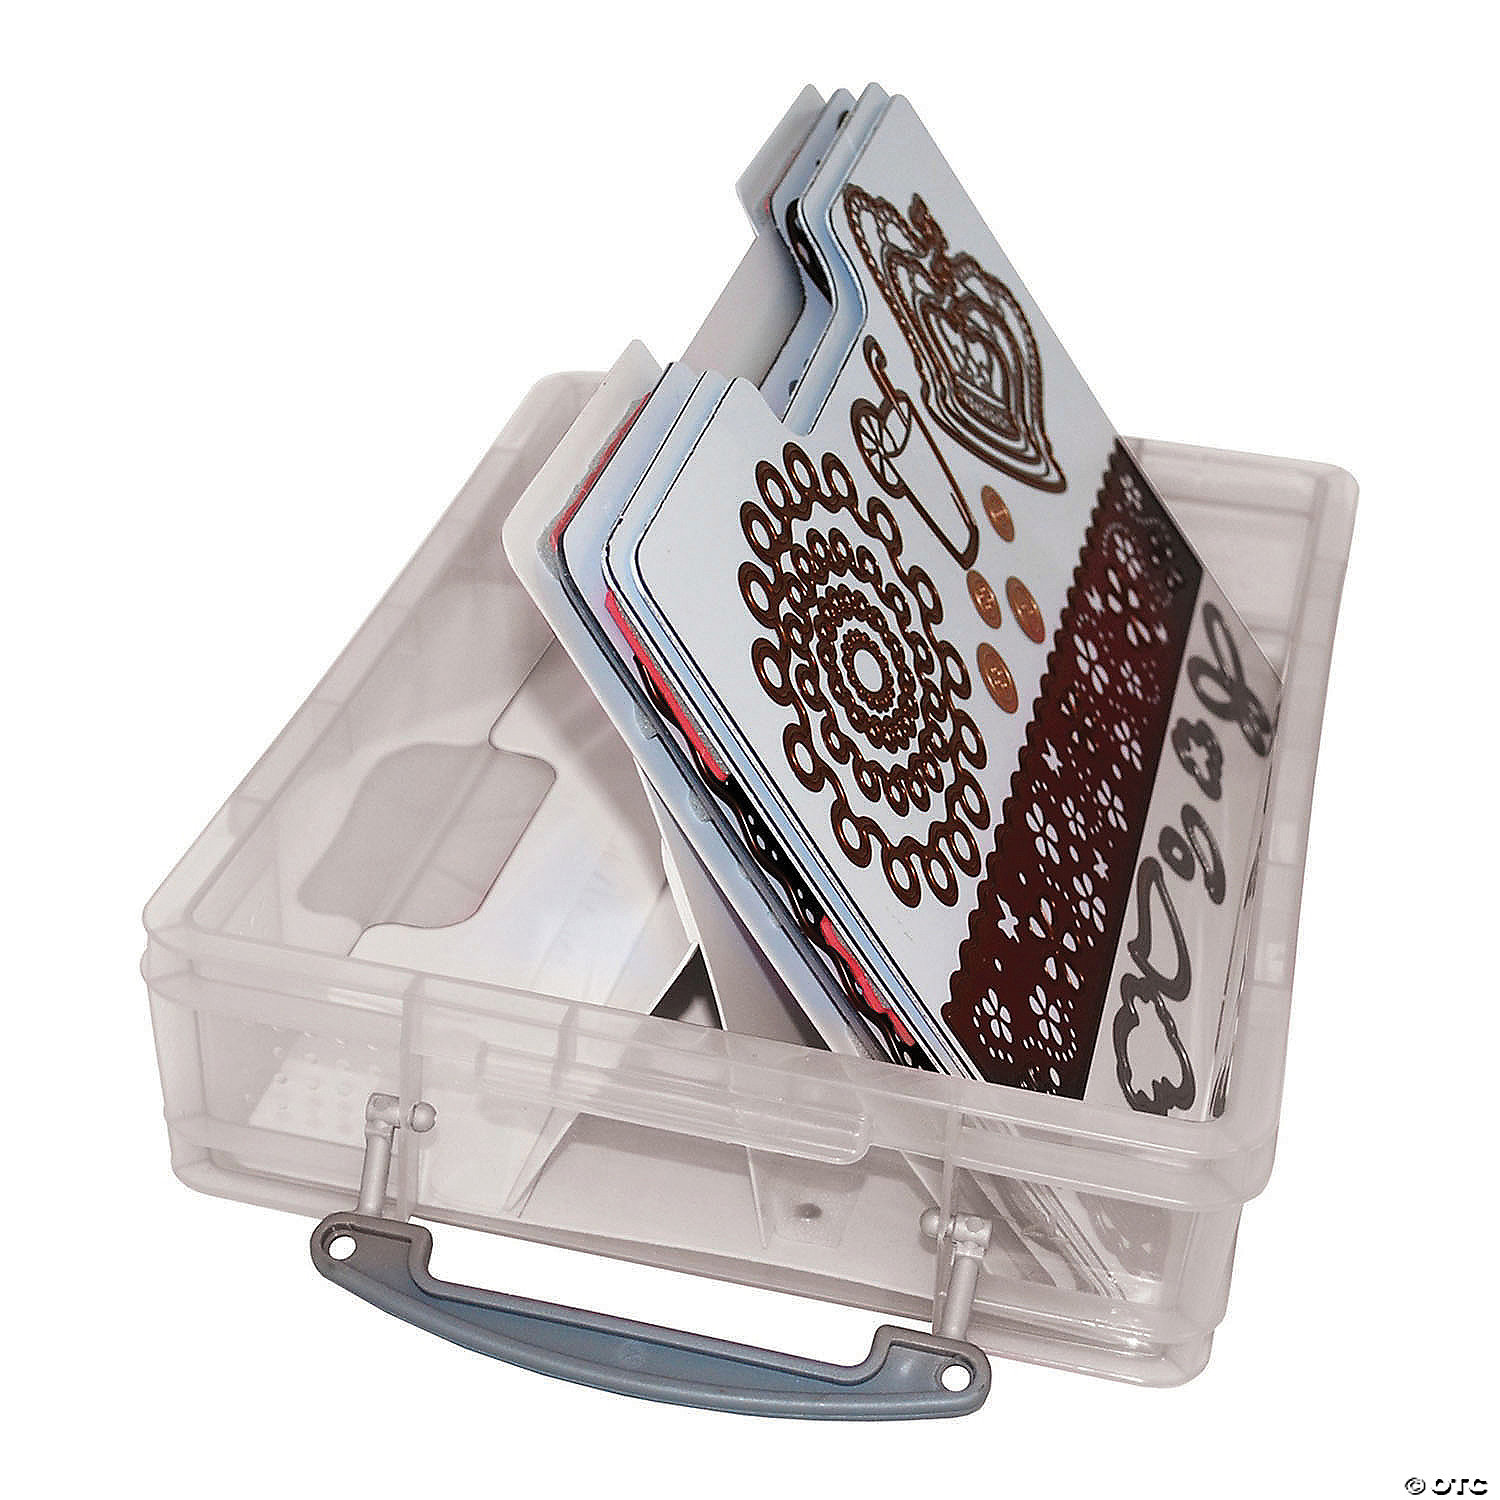 Zutter Magnetic Die & Stamp Storage Case